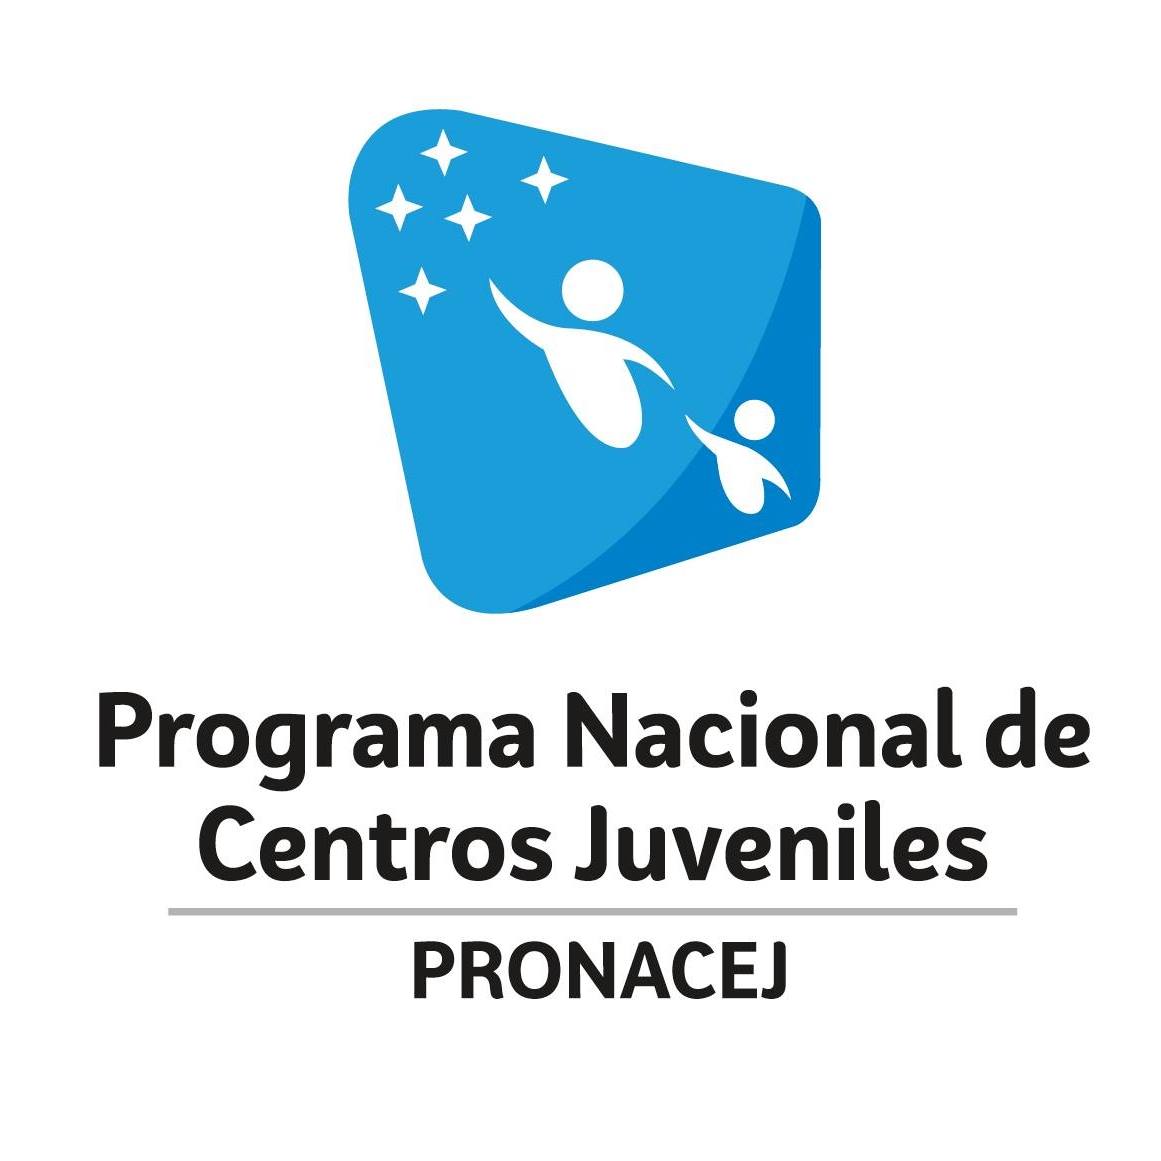 Programa Nacional de Centros Juveniles